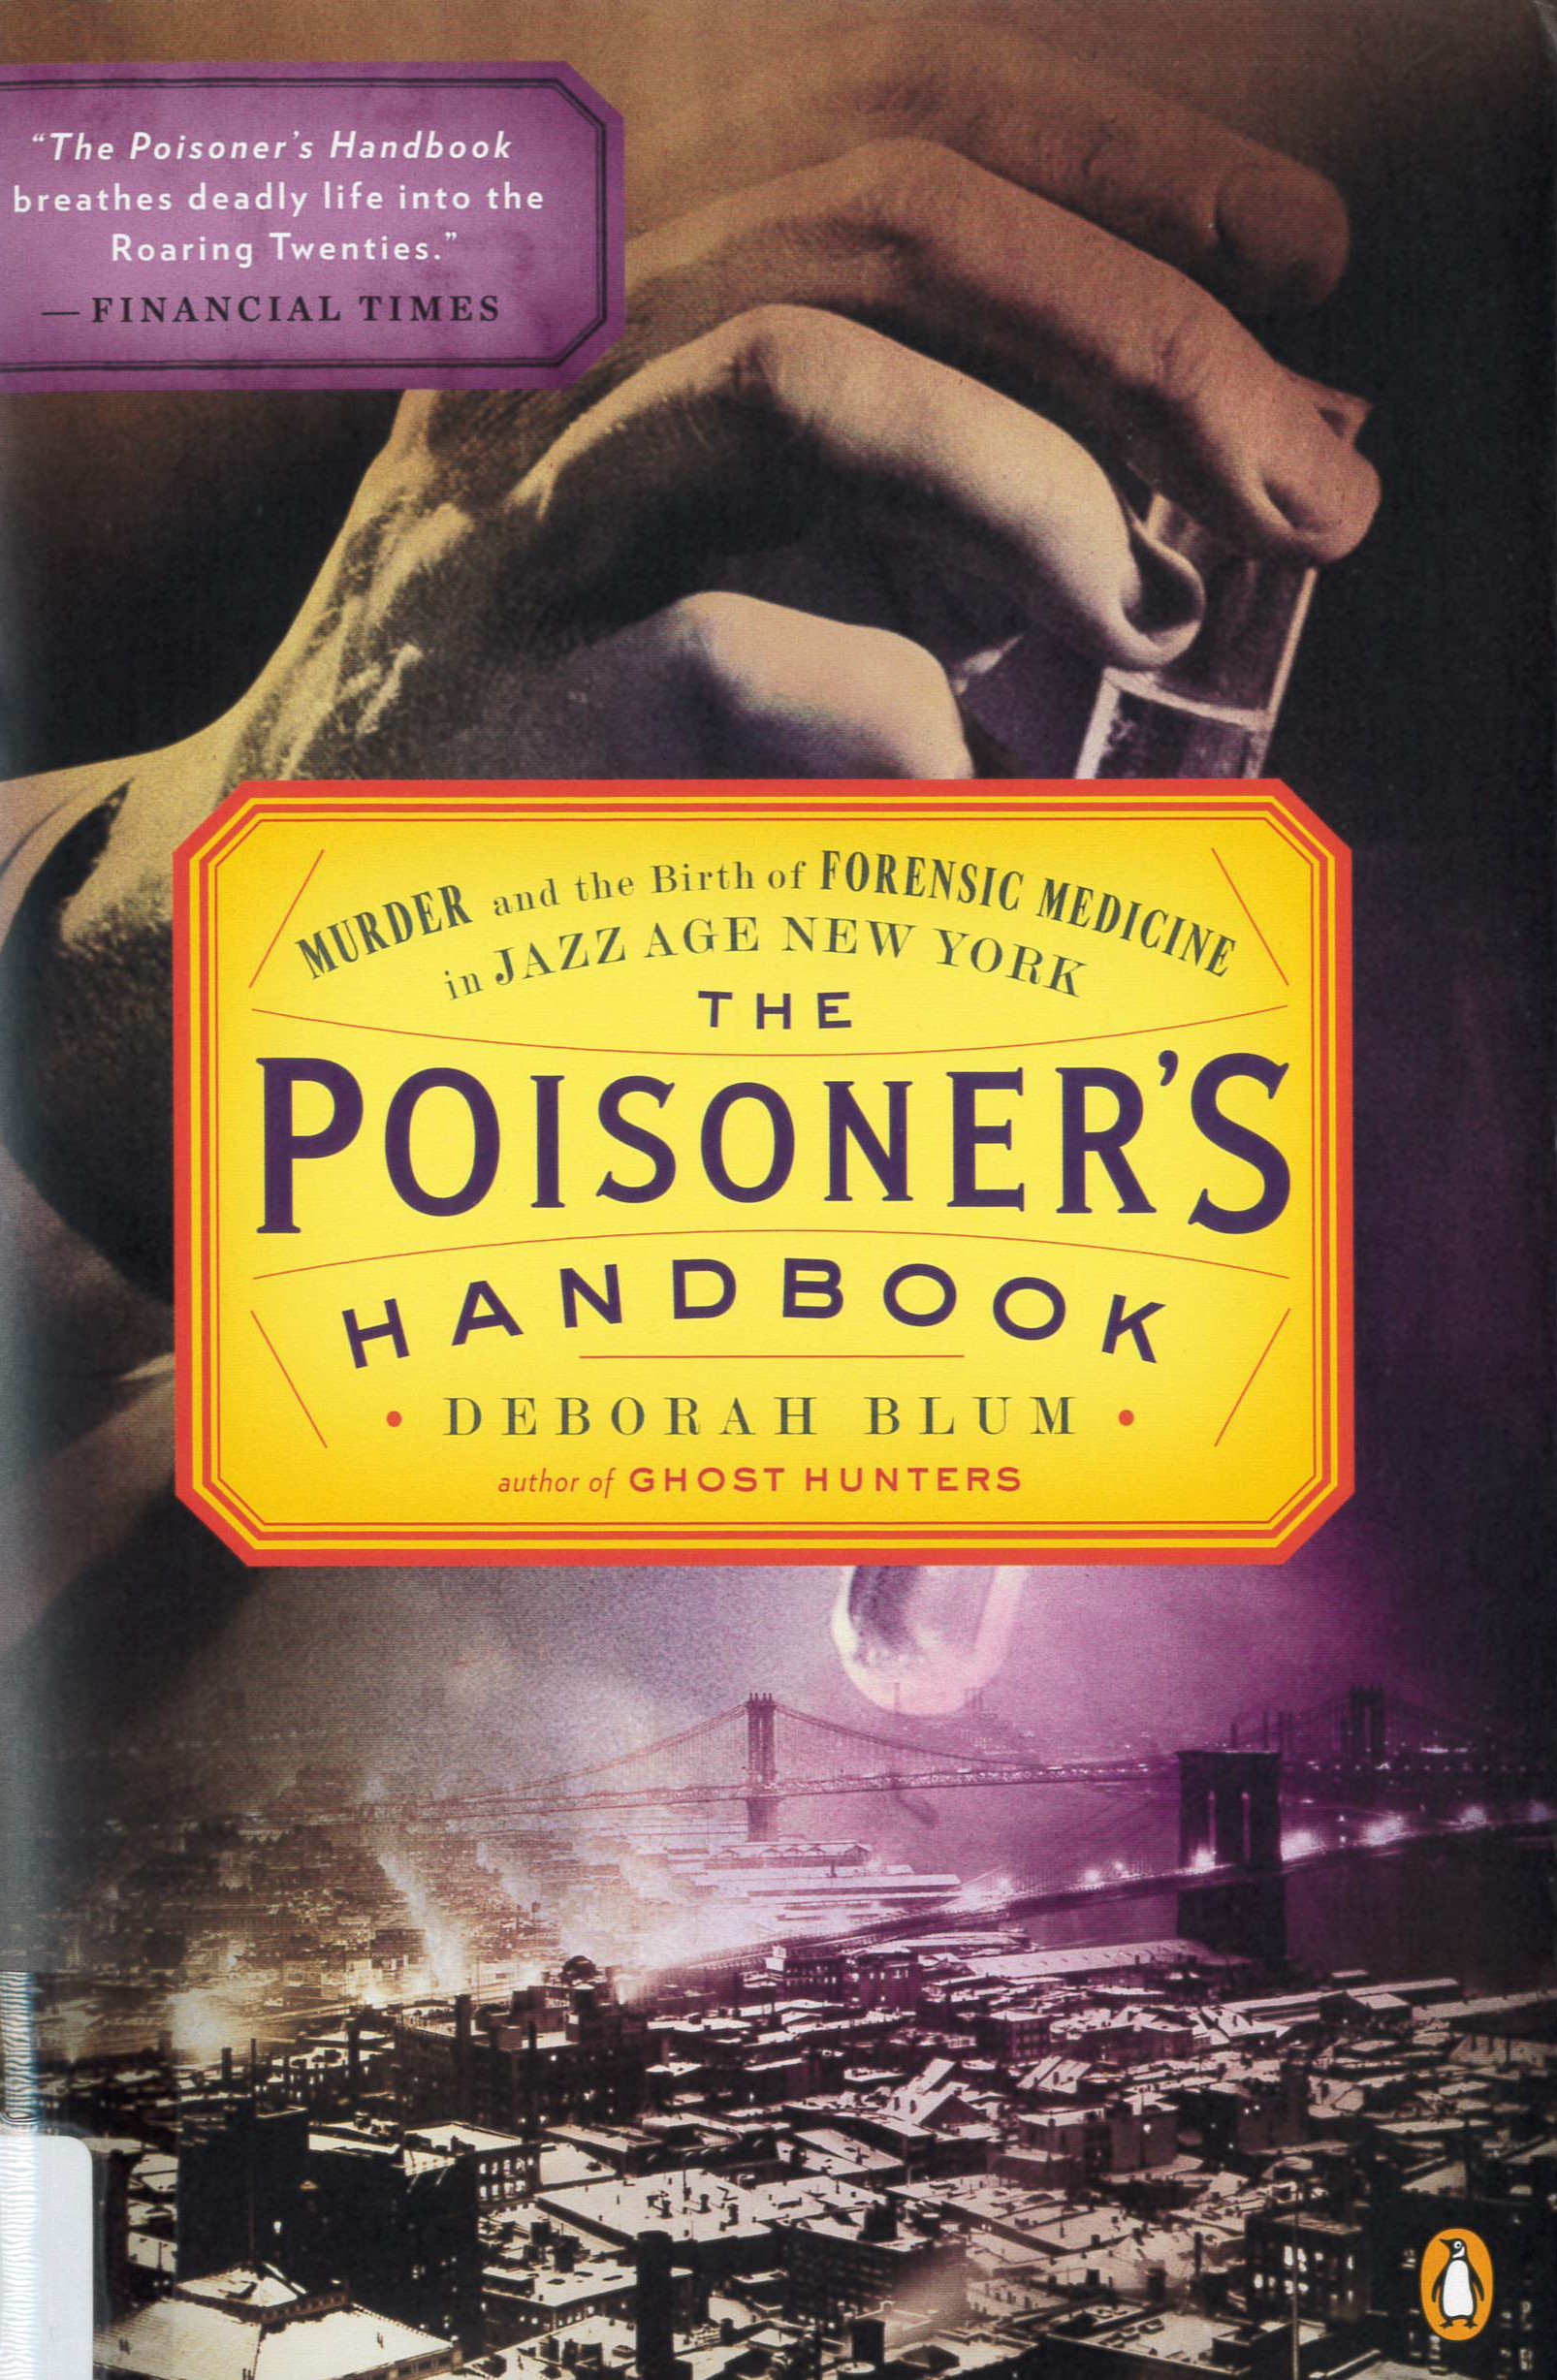 The poisoner